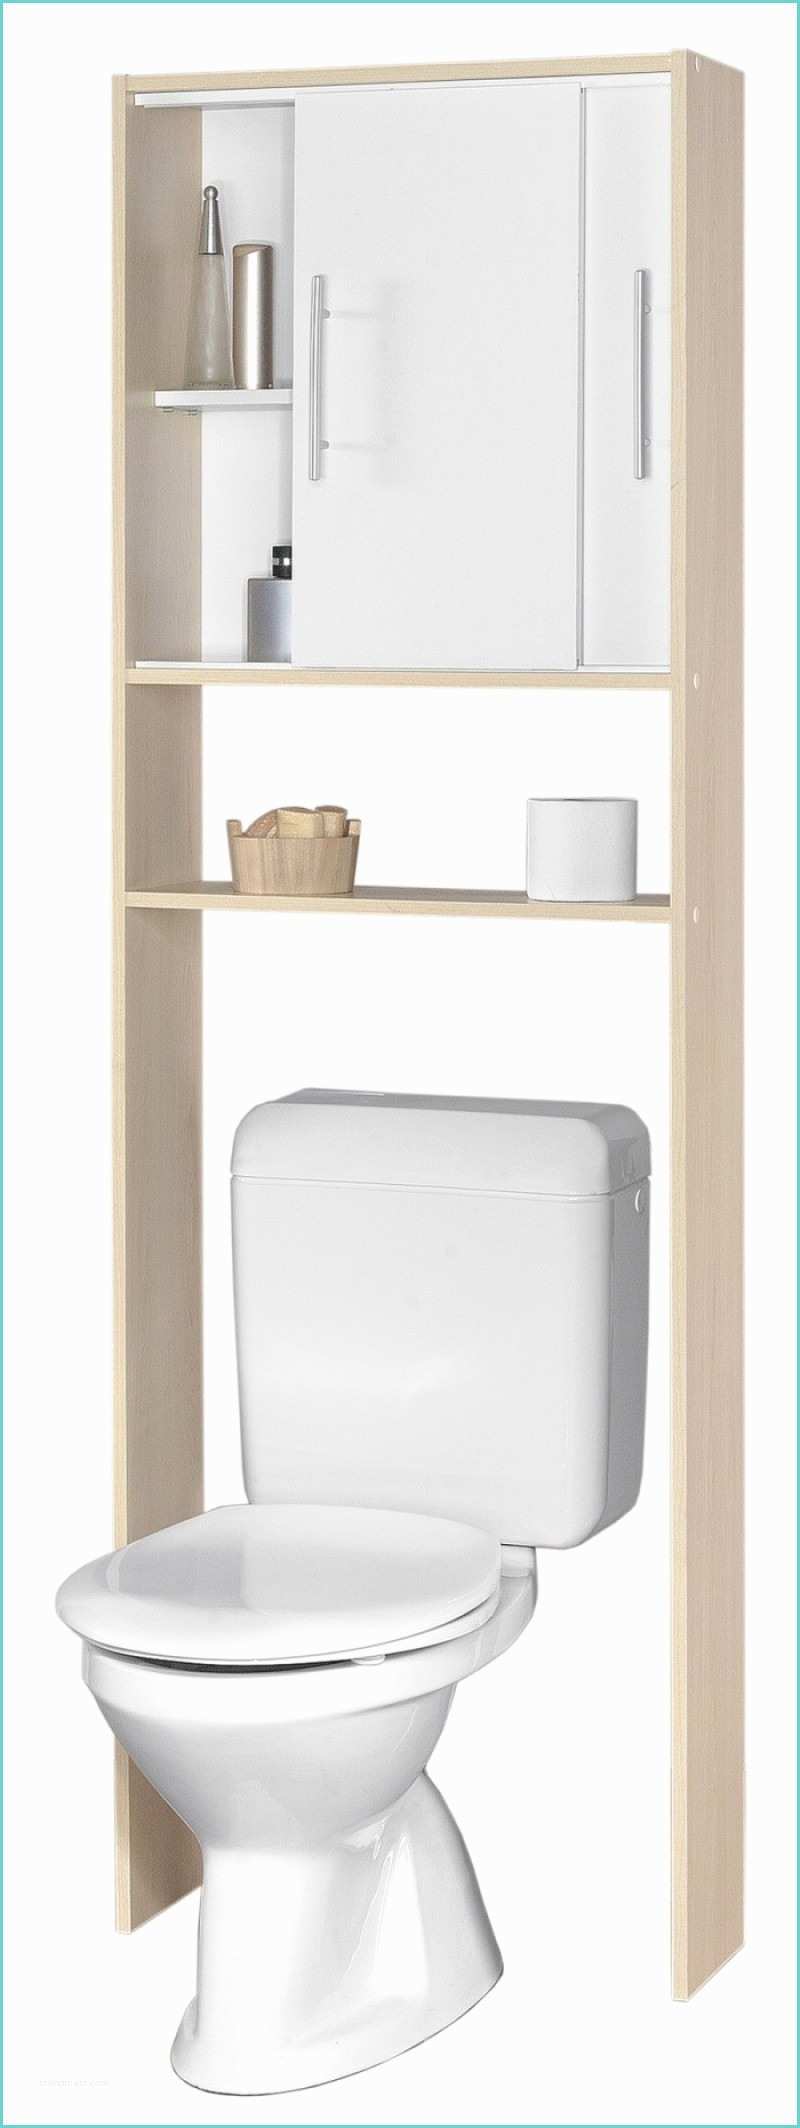 Meuble De toilette Ikea Meuble De Rangement Pour Wc Avec Rangement Papier toilette